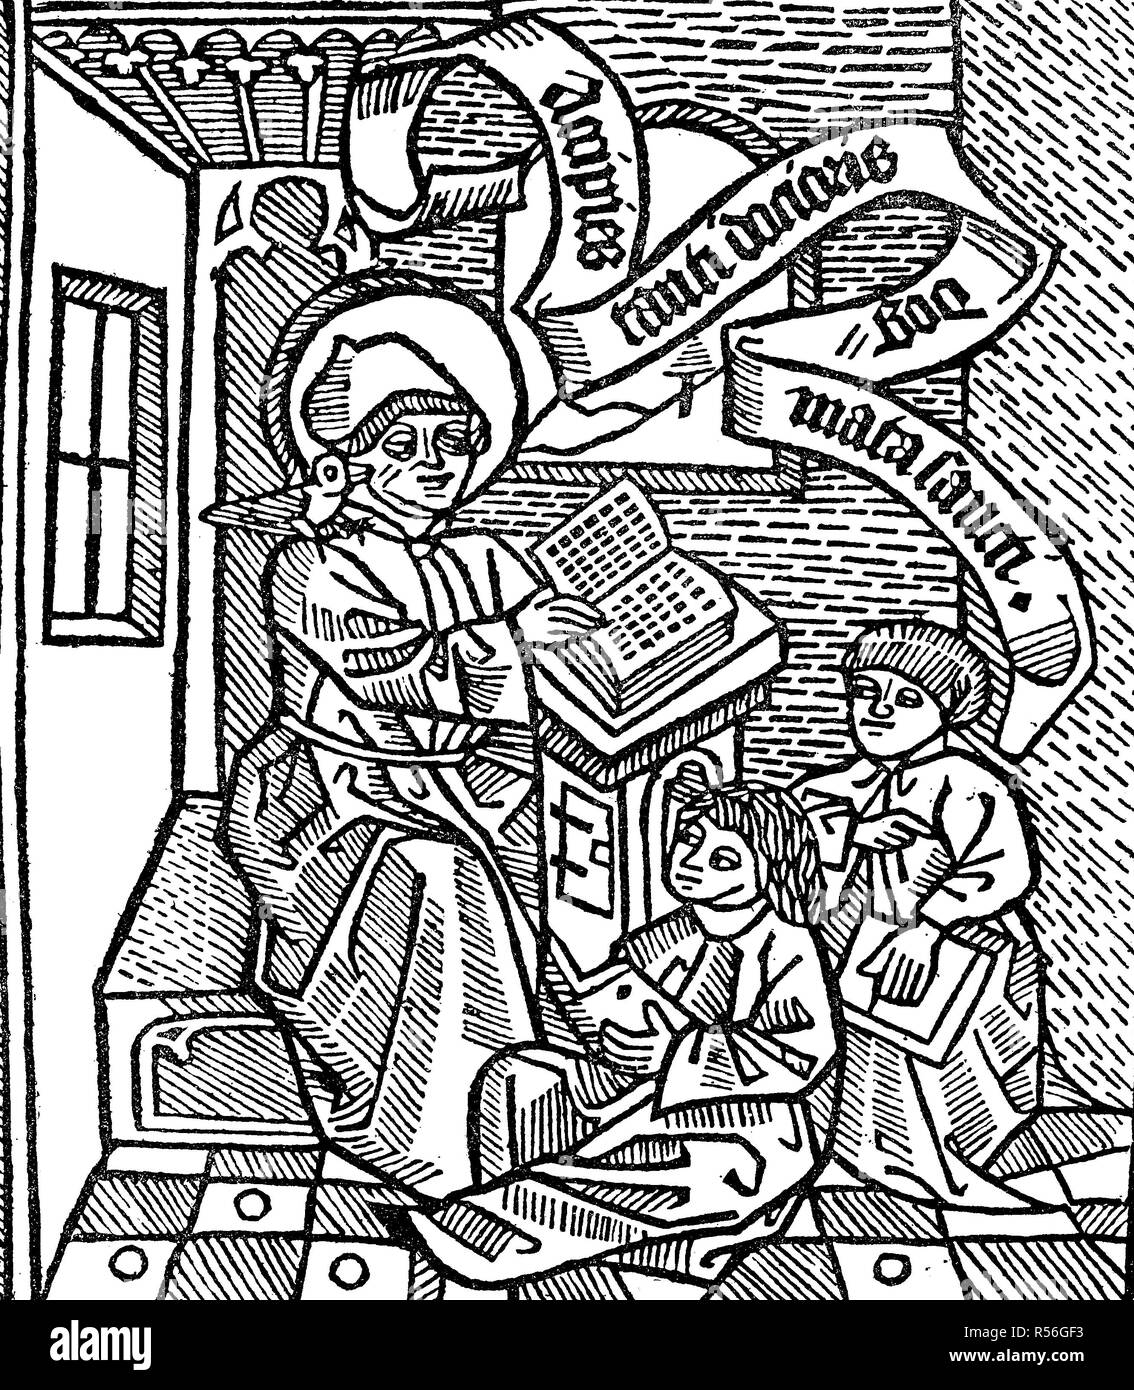 Professeur Thomas d'Aquin et deux élèves, 1497, gravure sur bois, Italie Banque D'Images